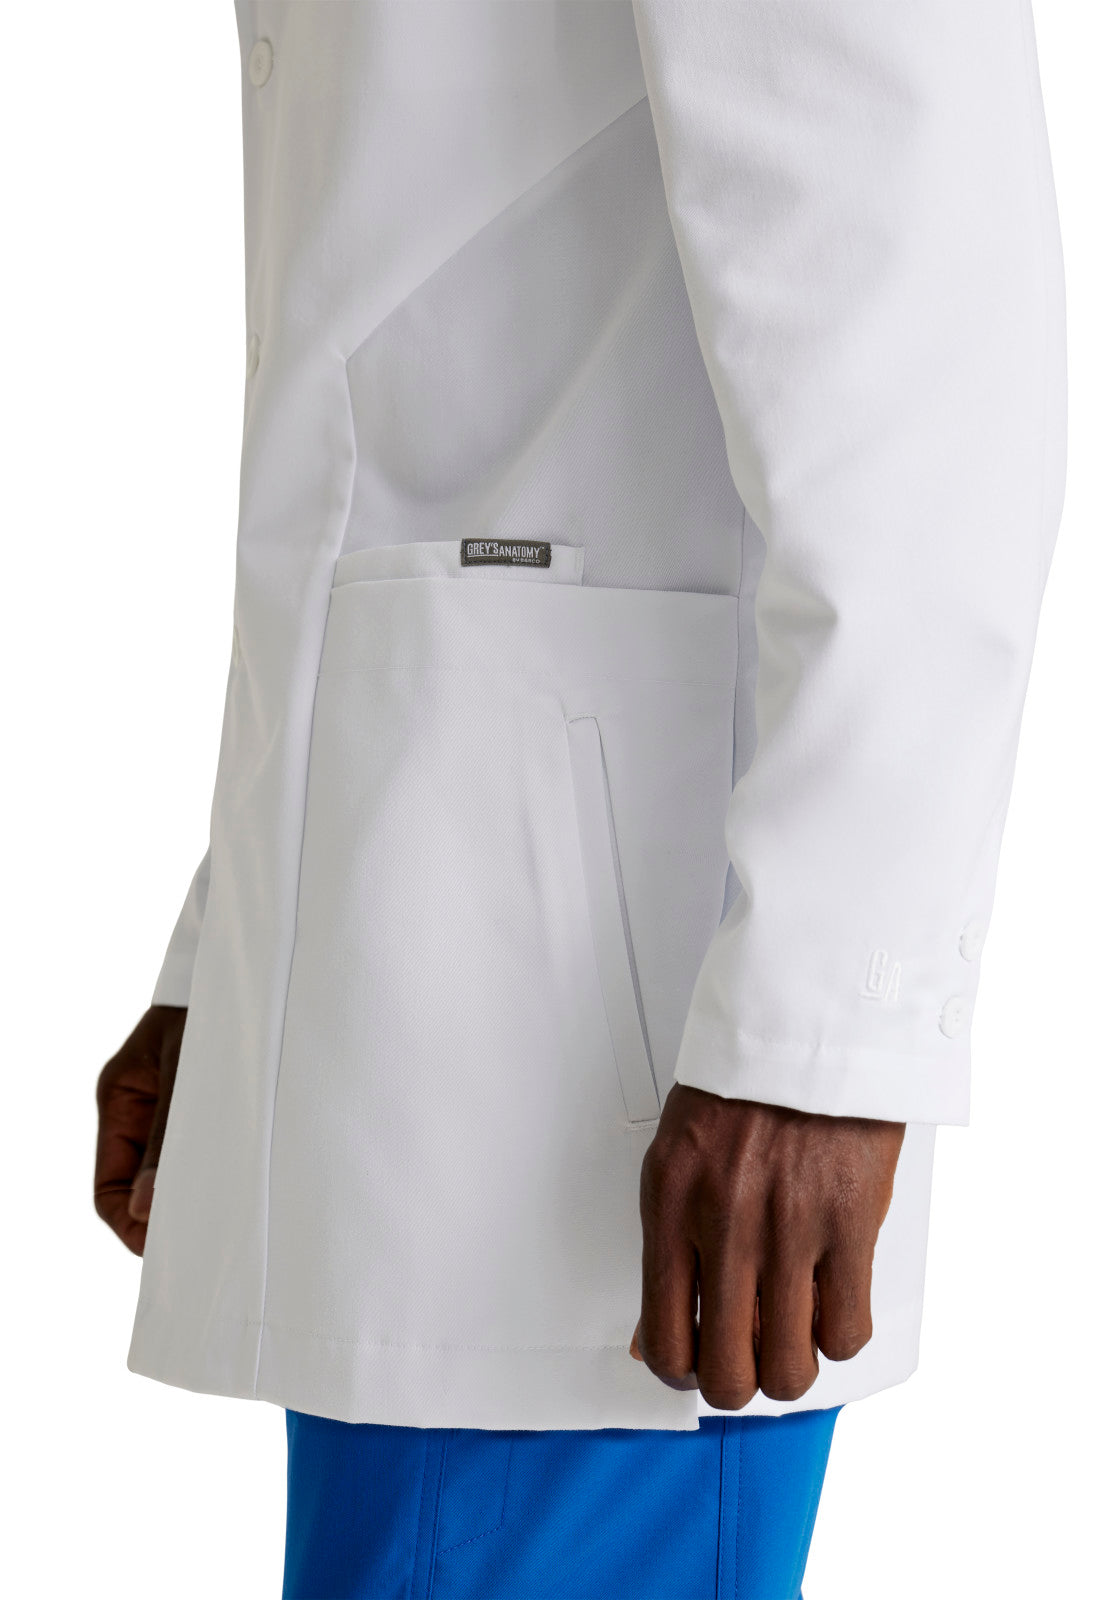 Men's Six-Pocket 35" Derek Lab Coat